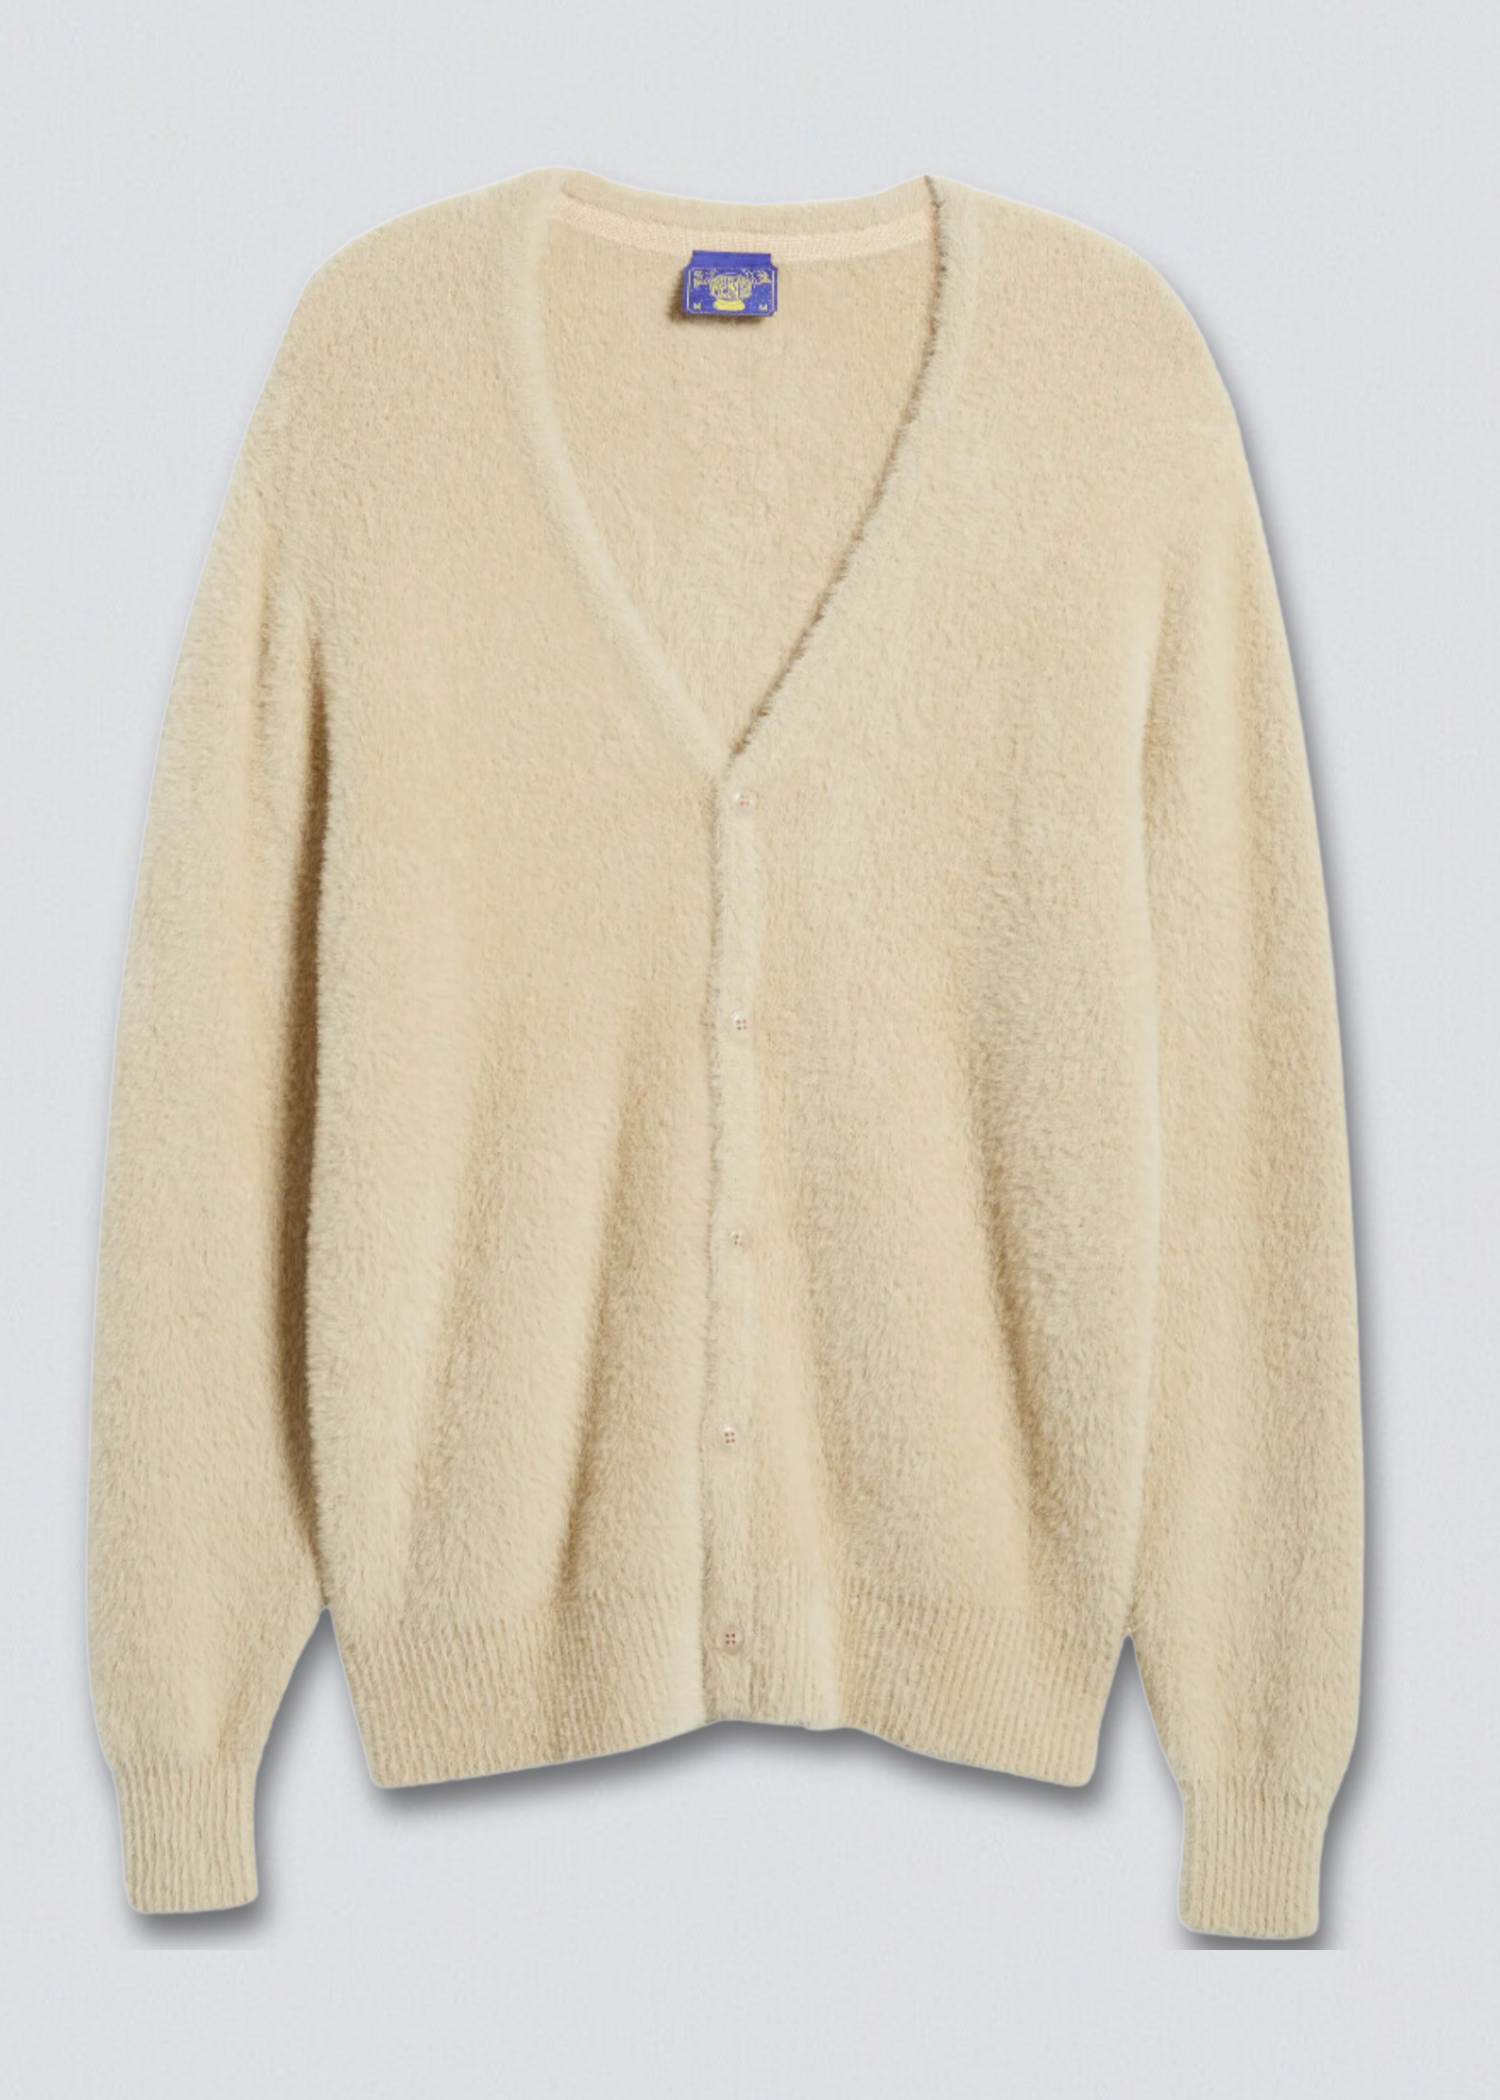 Fuzzy Cardigan Sweater